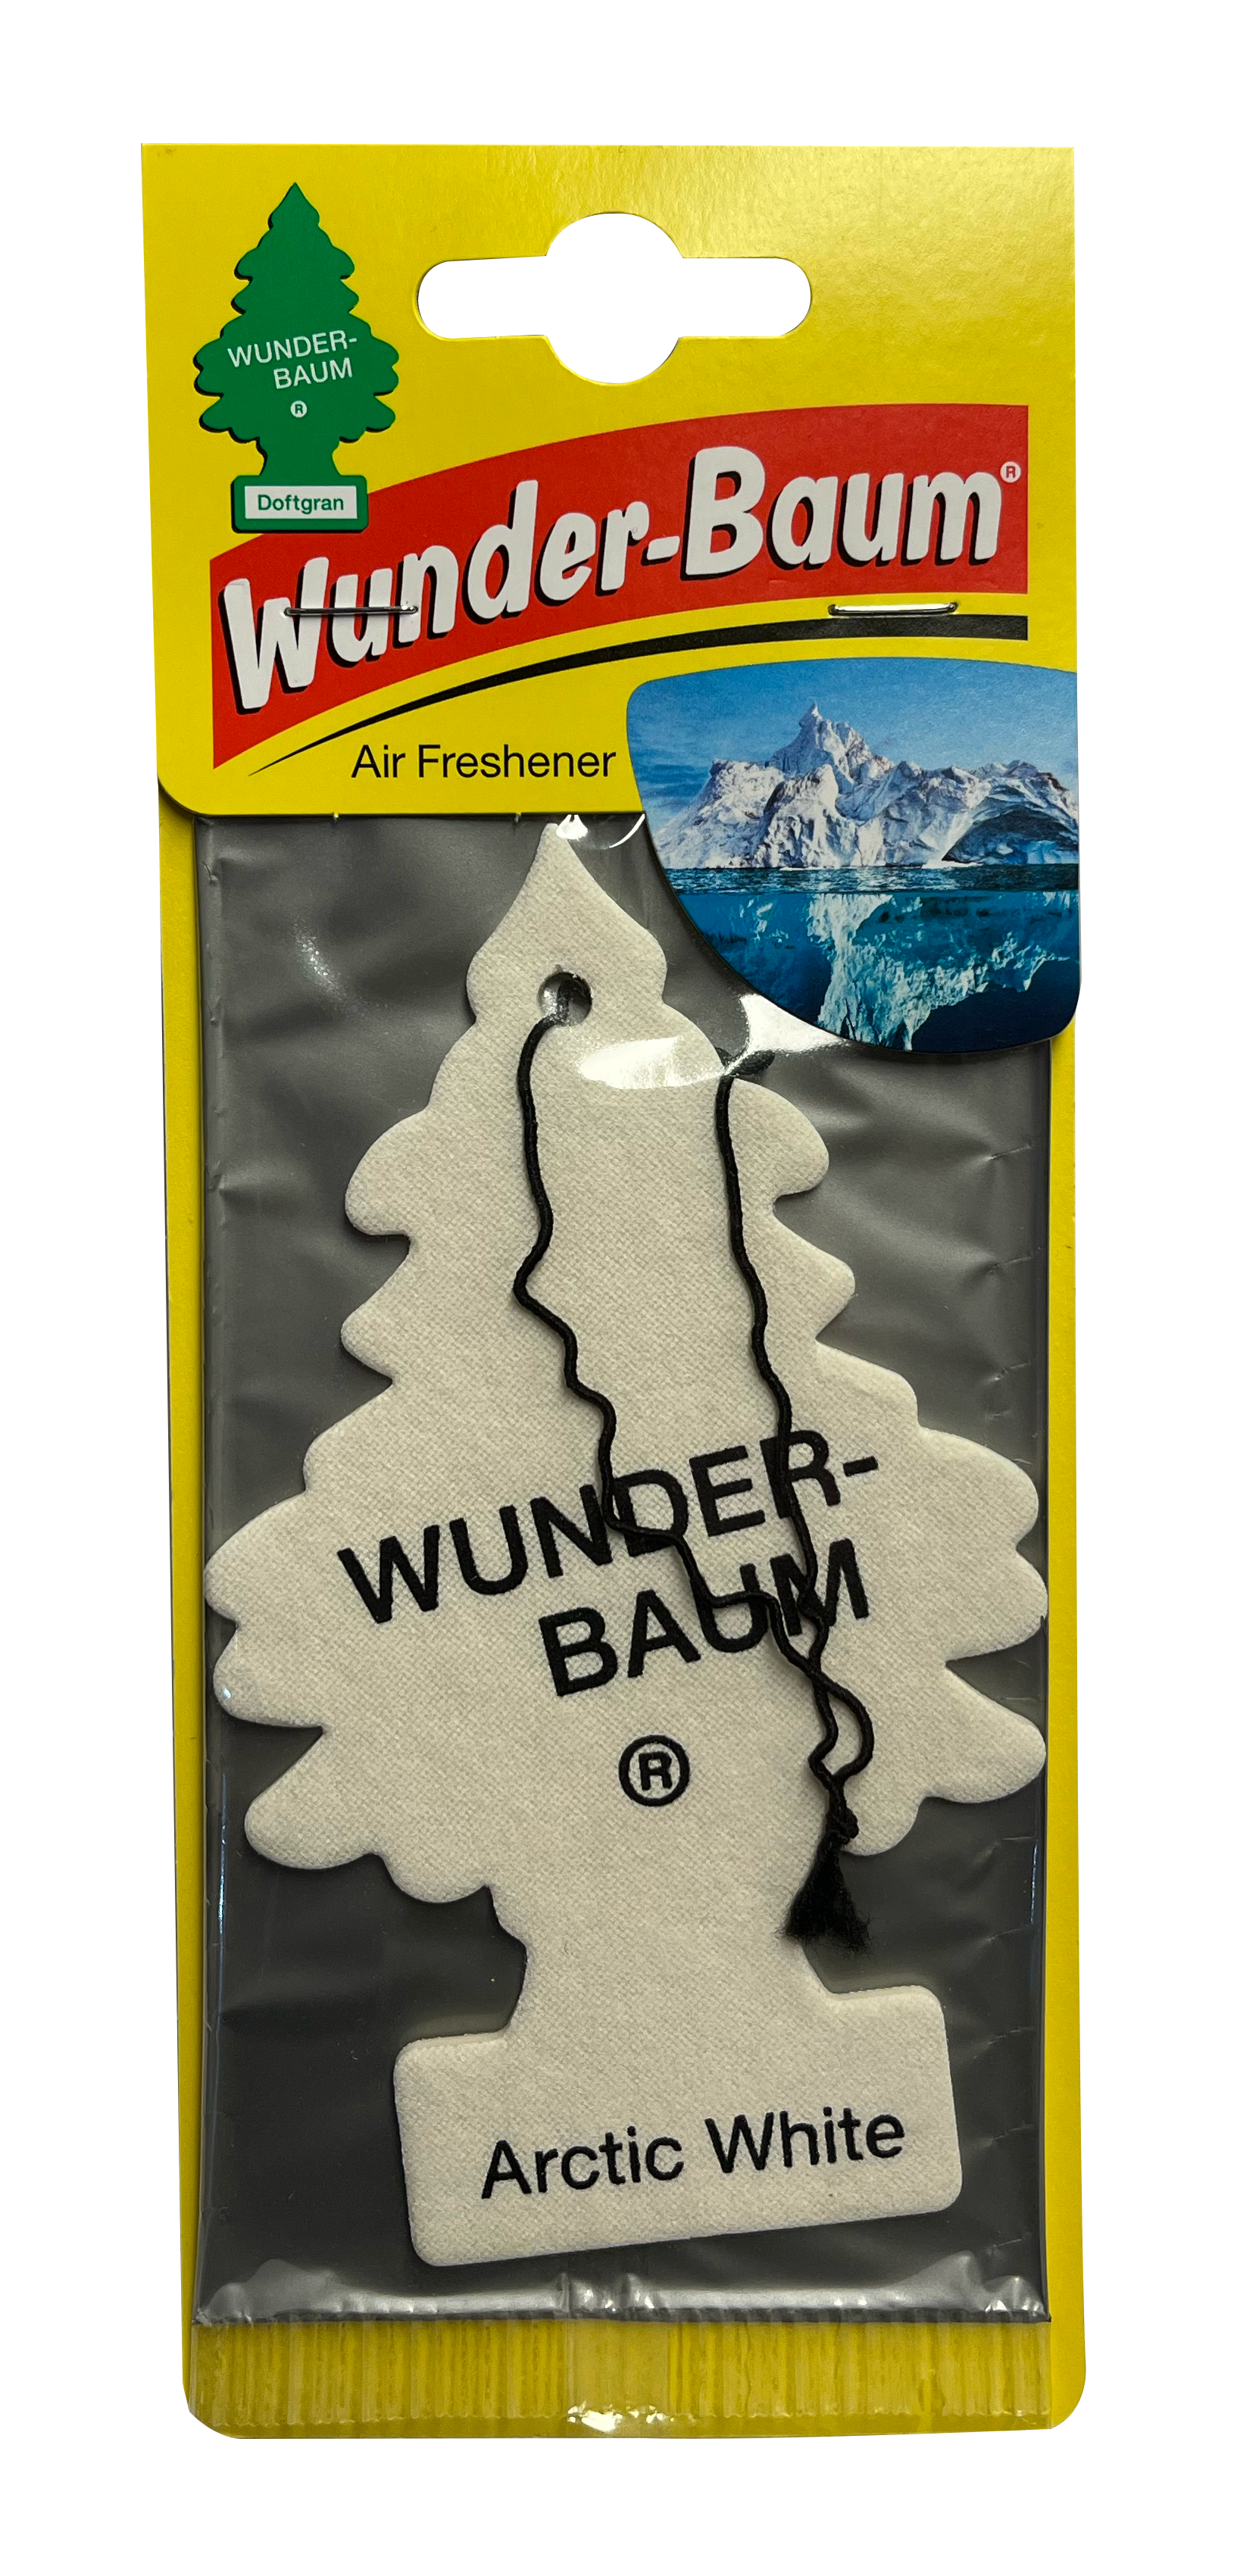 Buy WunderBaum Arctic White? - Special Interior